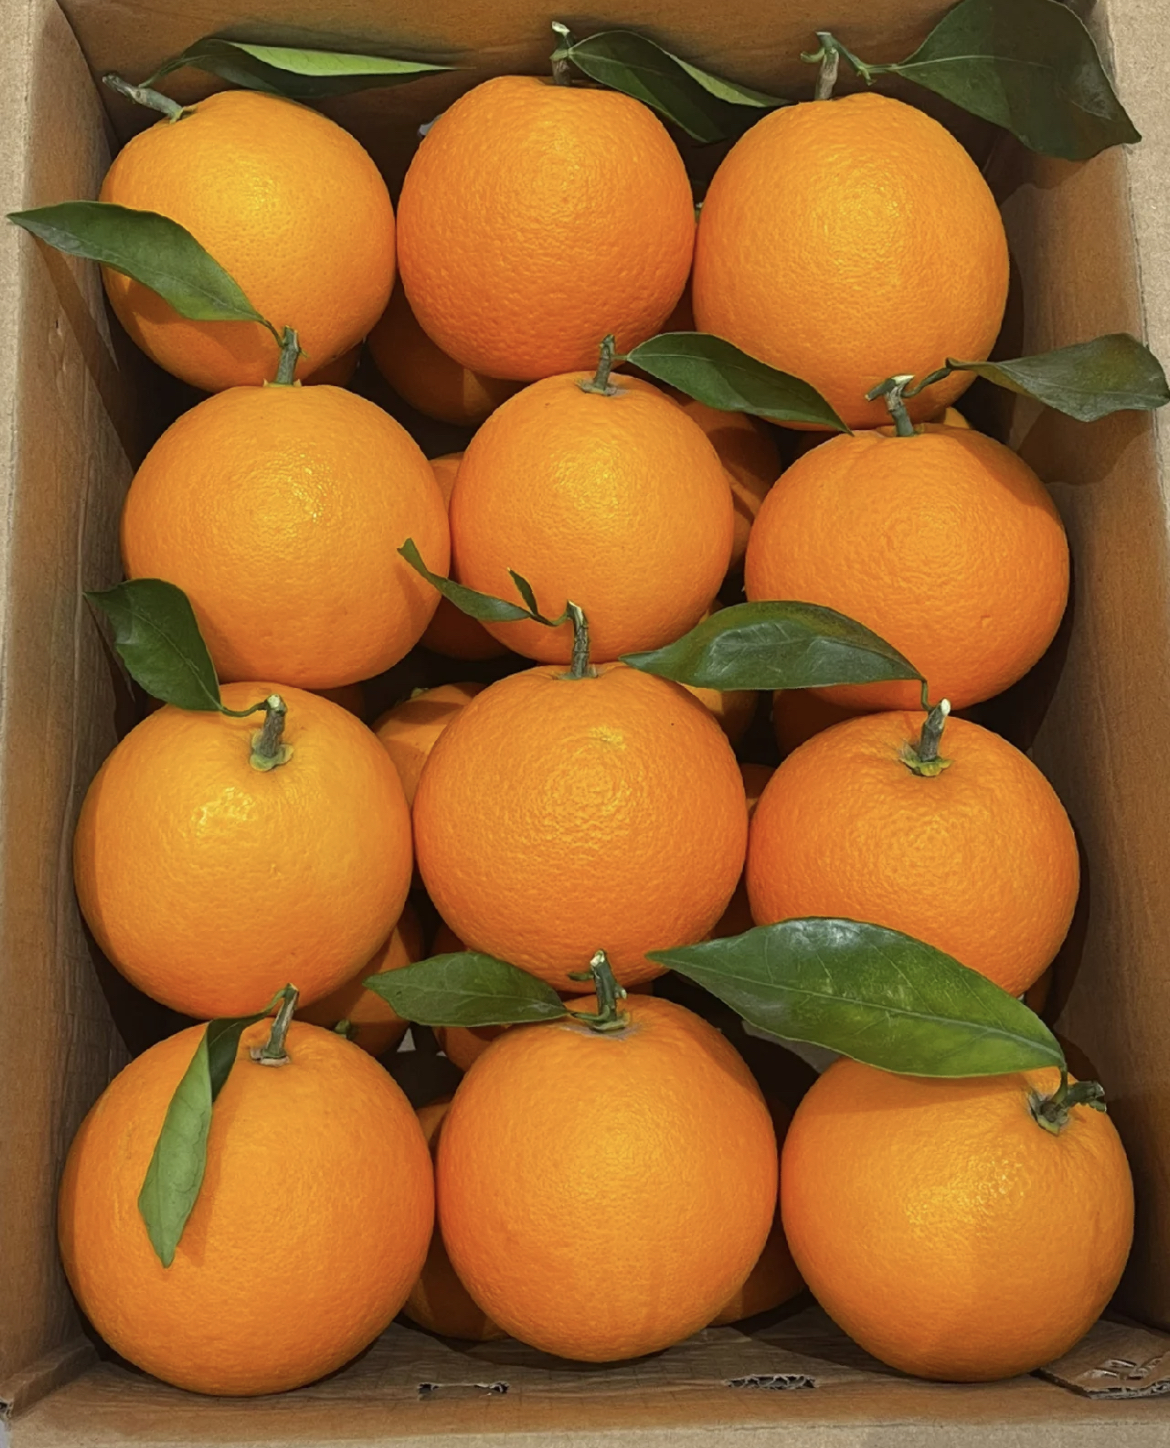 橙子超甜自家种植网红橙子无籽橙子超级好切